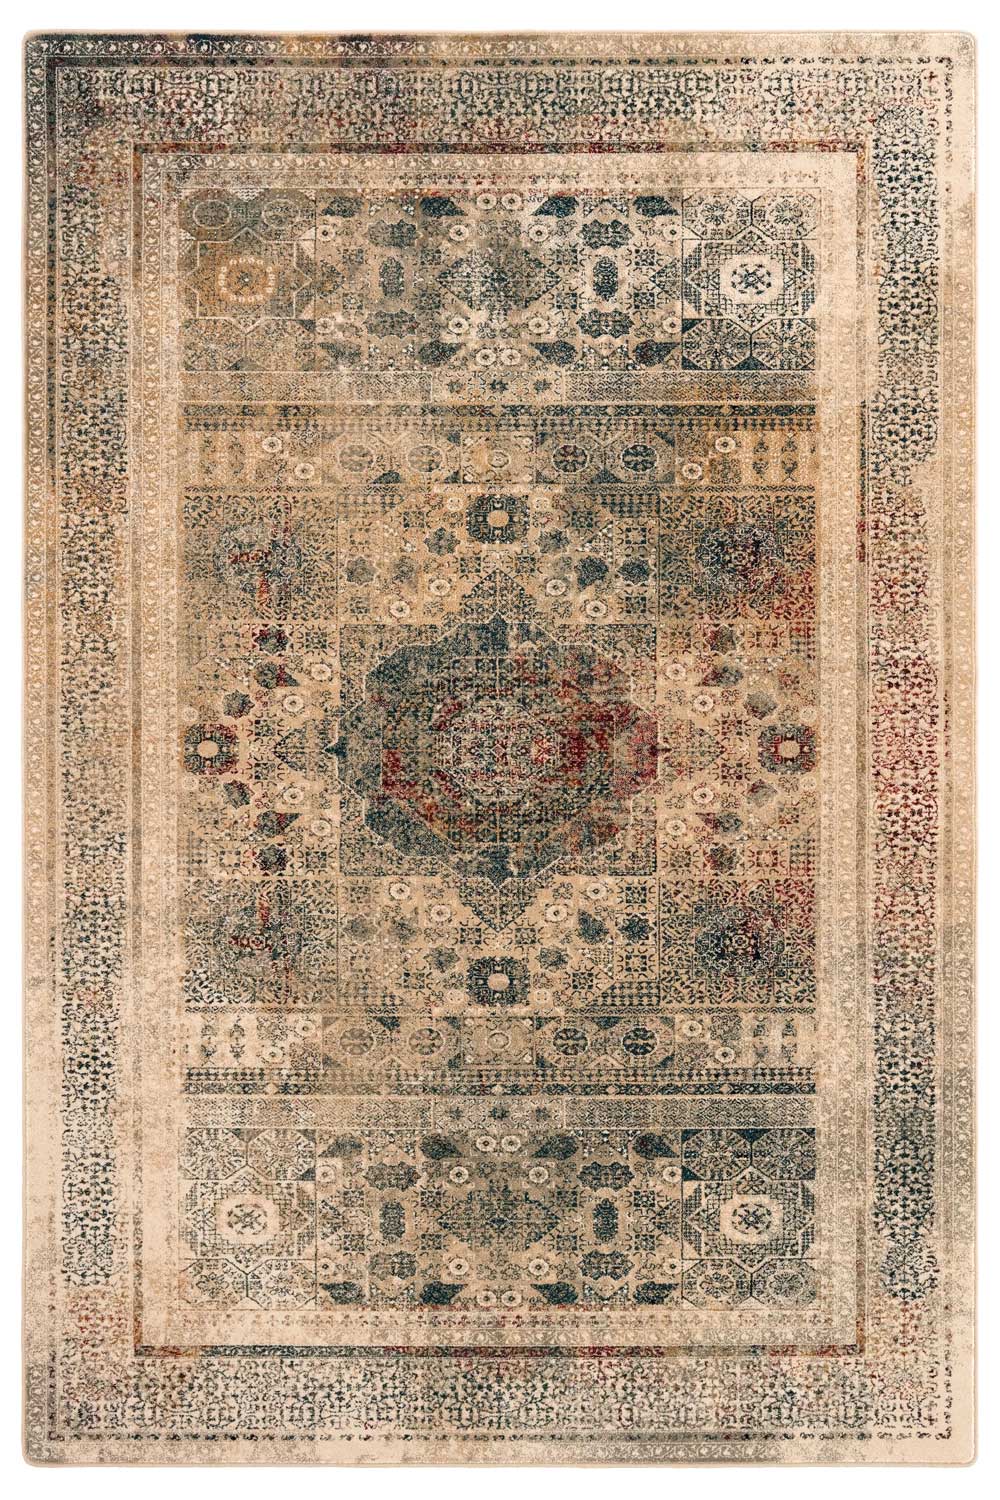 Kusový koberec OMEGA Mamluk Krem 200x300 cm